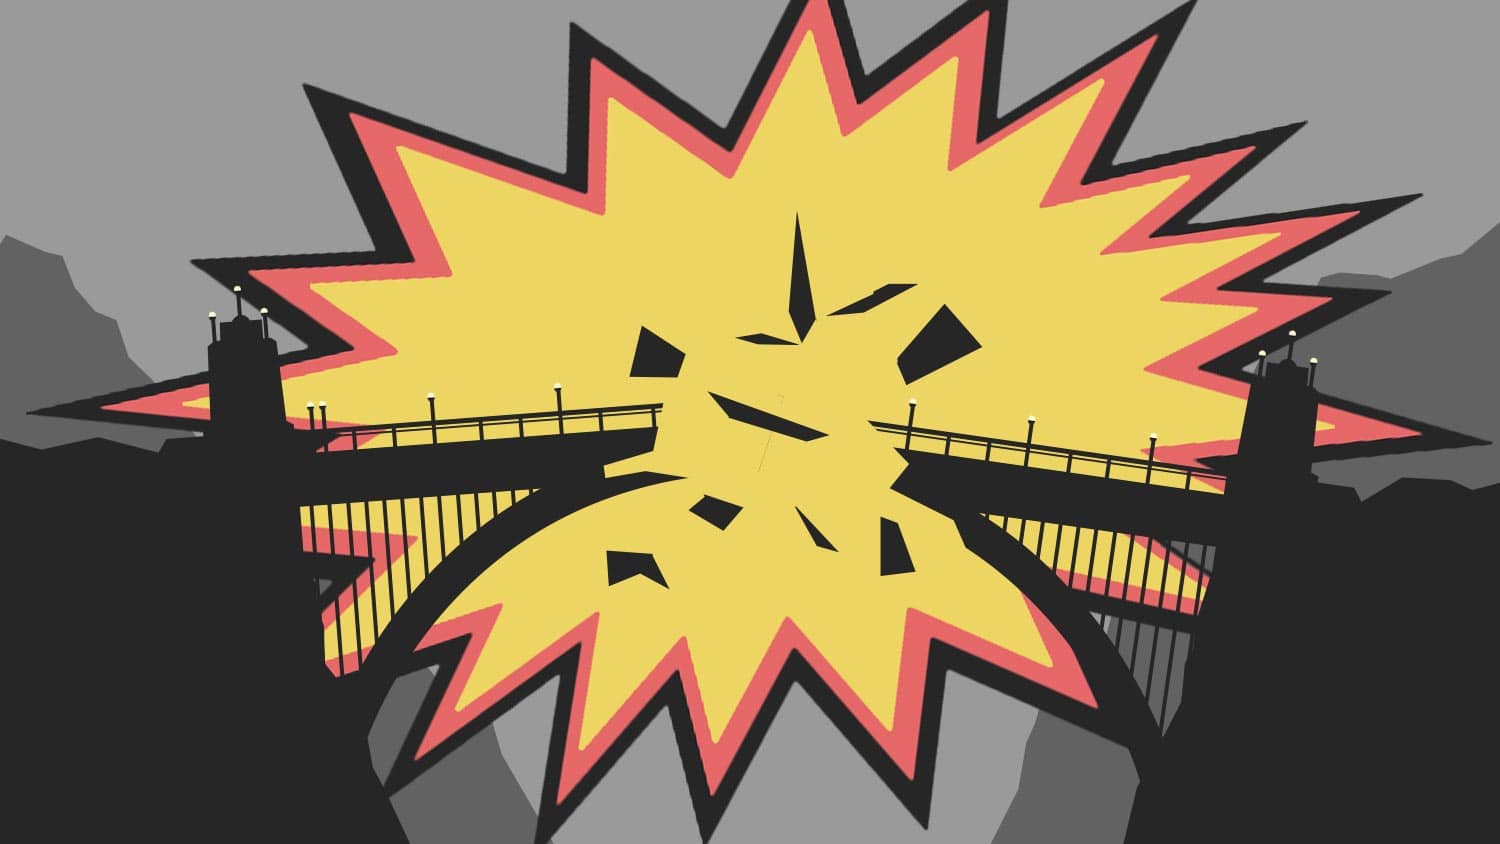 Bridge Explosion